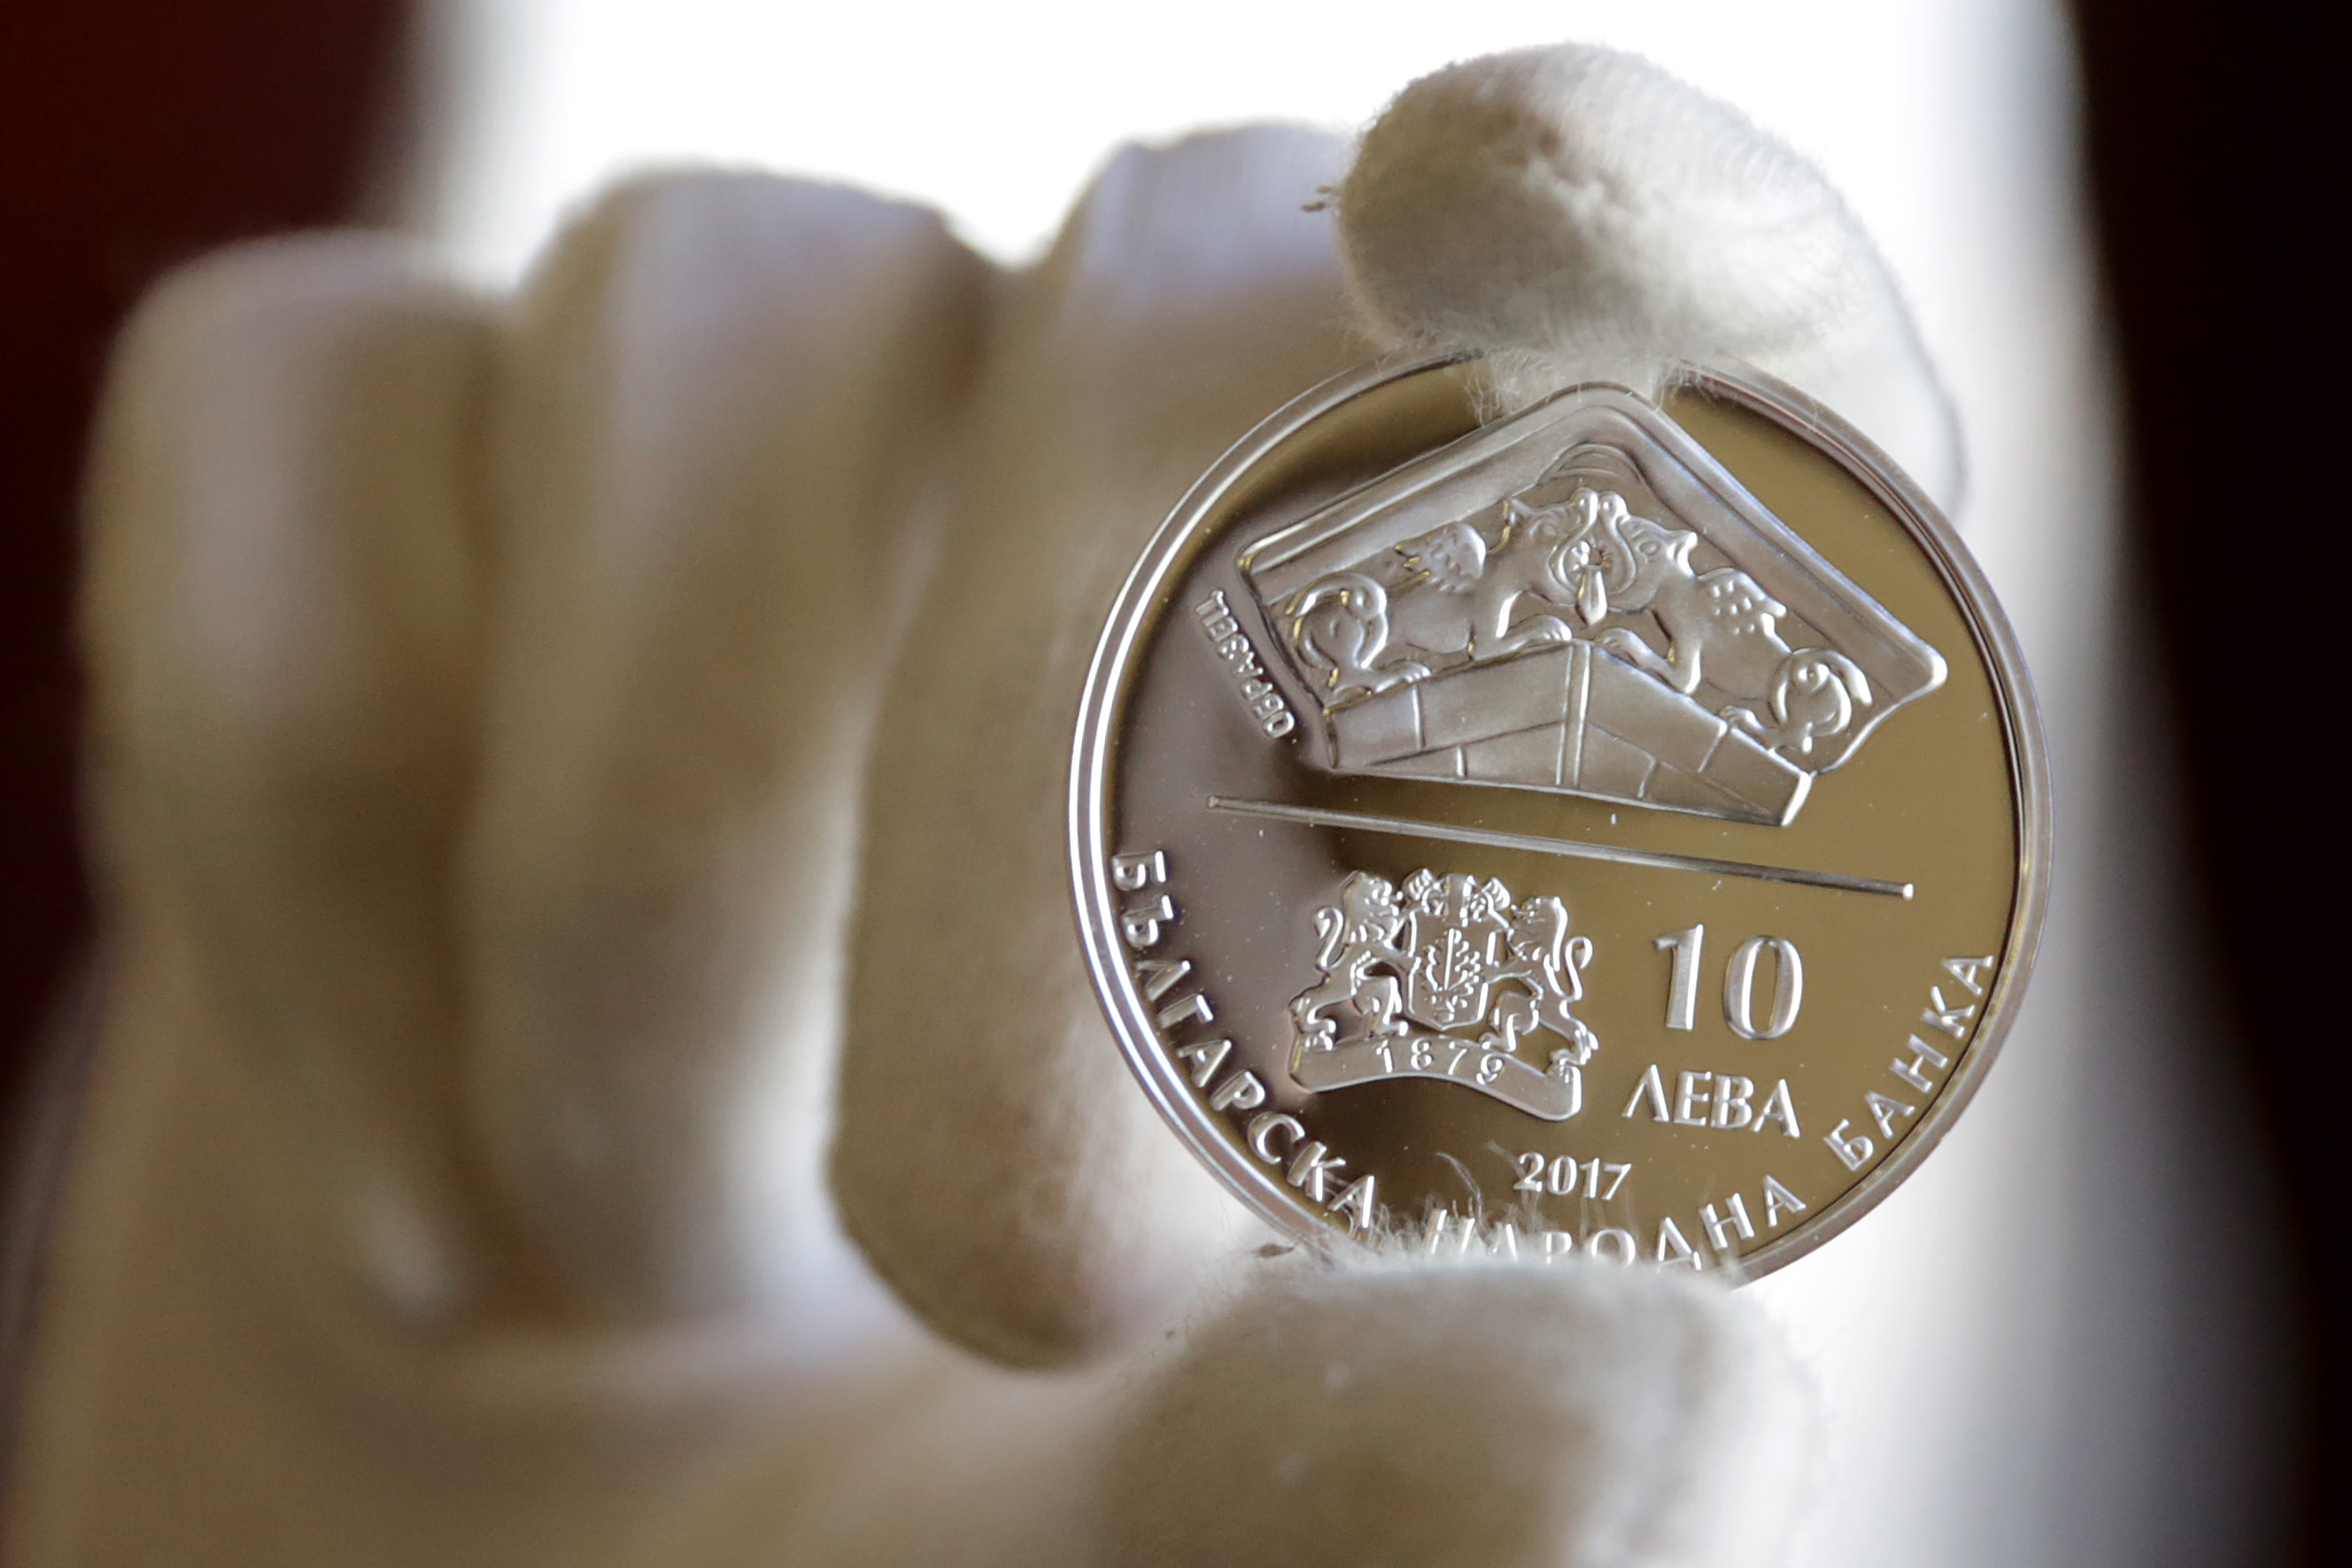 Сребърна възпоменателна монета на тема ”150 години от построяването на моста на Колю Фичето край Бяла”